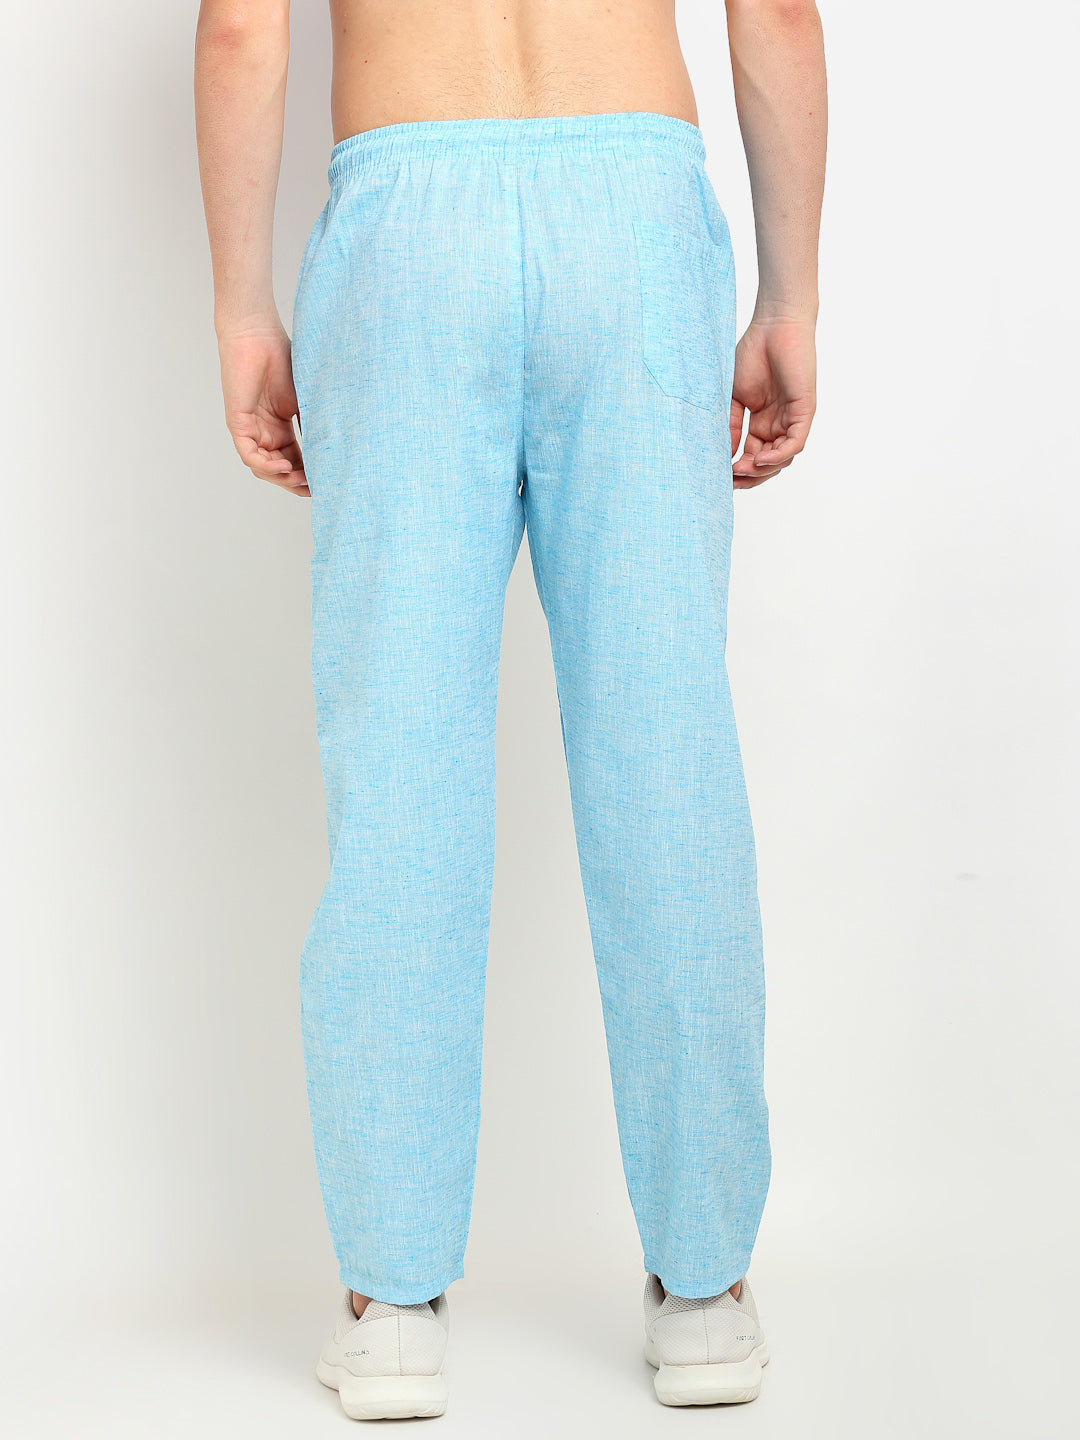 Men's Blue Linen Cotton Track Pants ( JOG 021Sky ) - Jainish